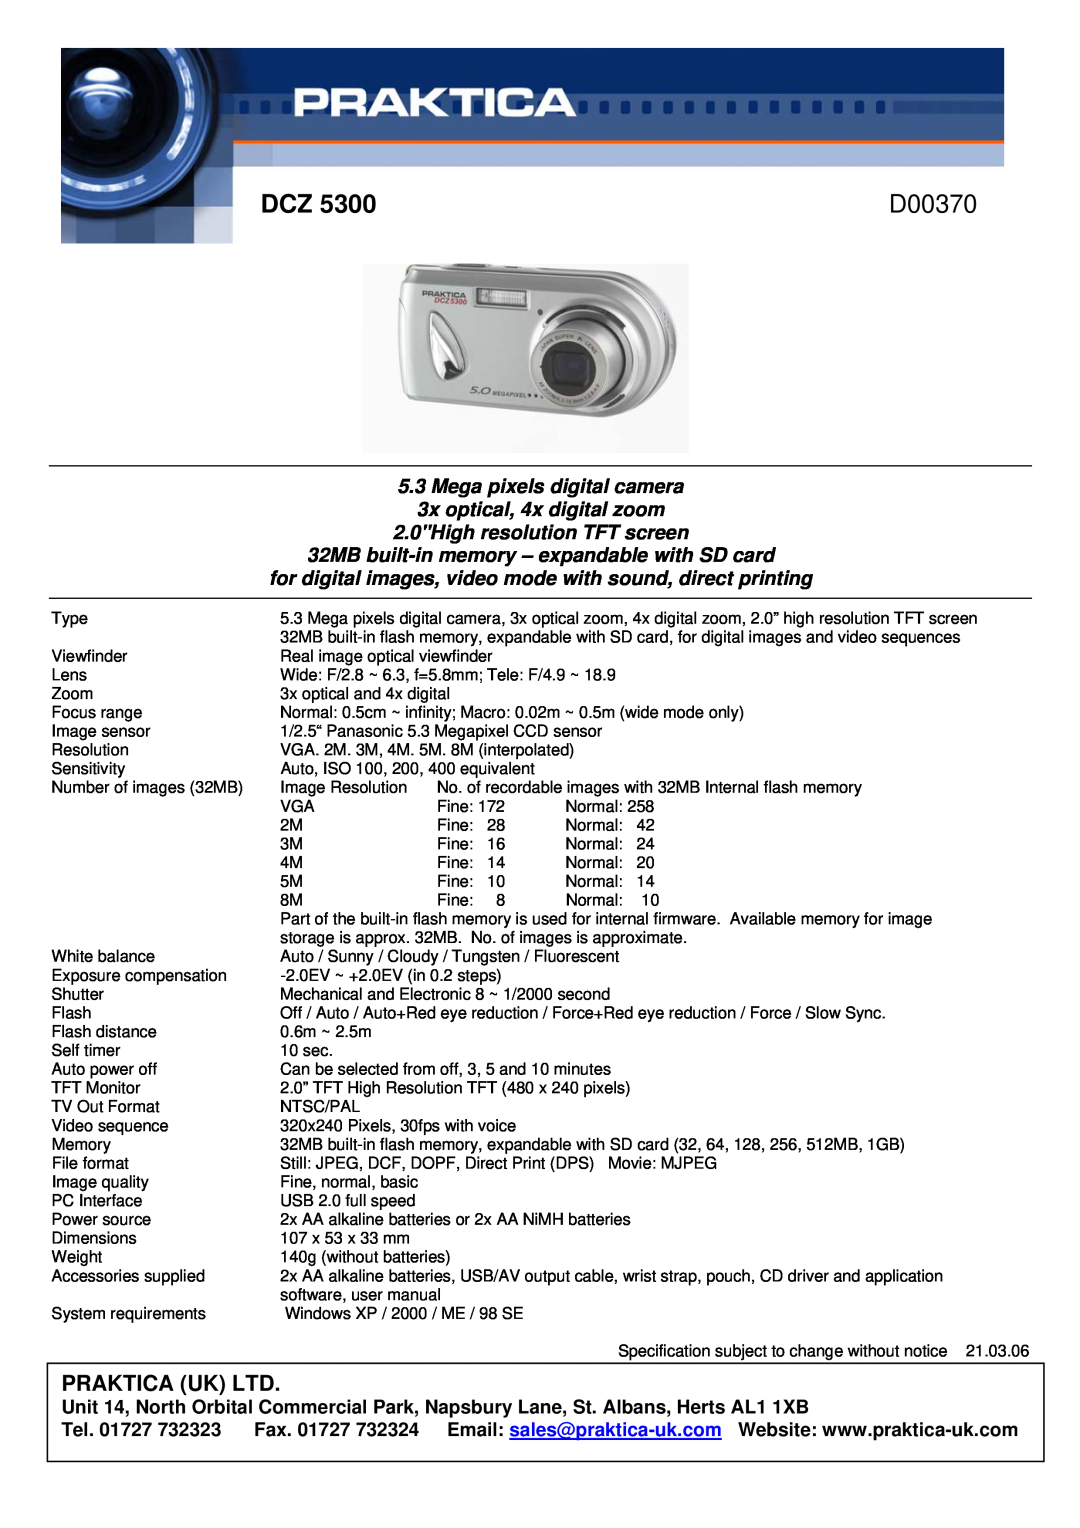 Praktica D00370 manual Mega pixels digital camera 3x optical, 4x digital zoom, 2.0High resolution TFT screen 